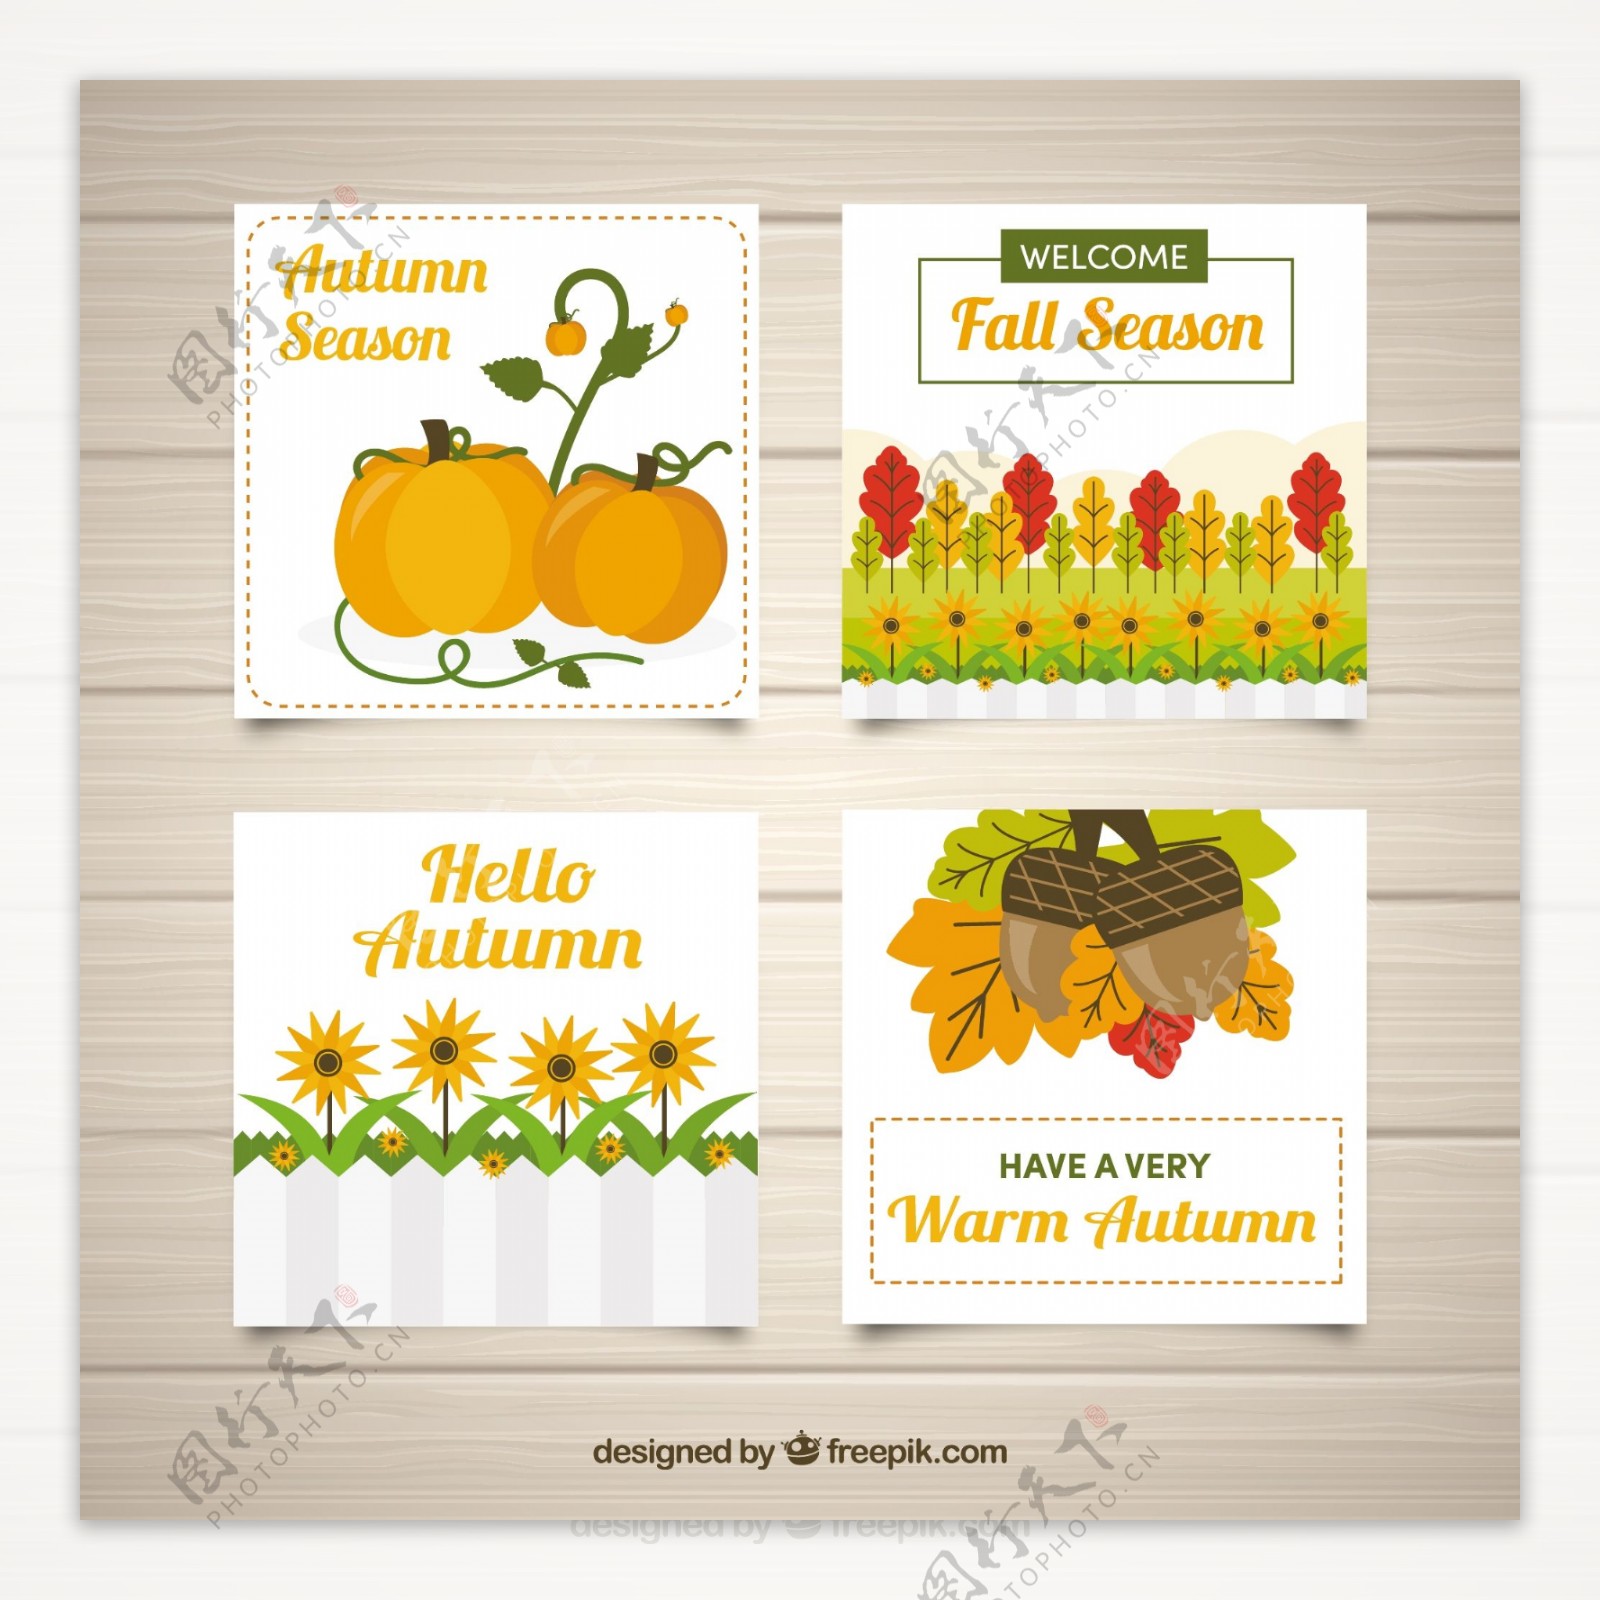 秋天的元素丰富多彩的收藏卡